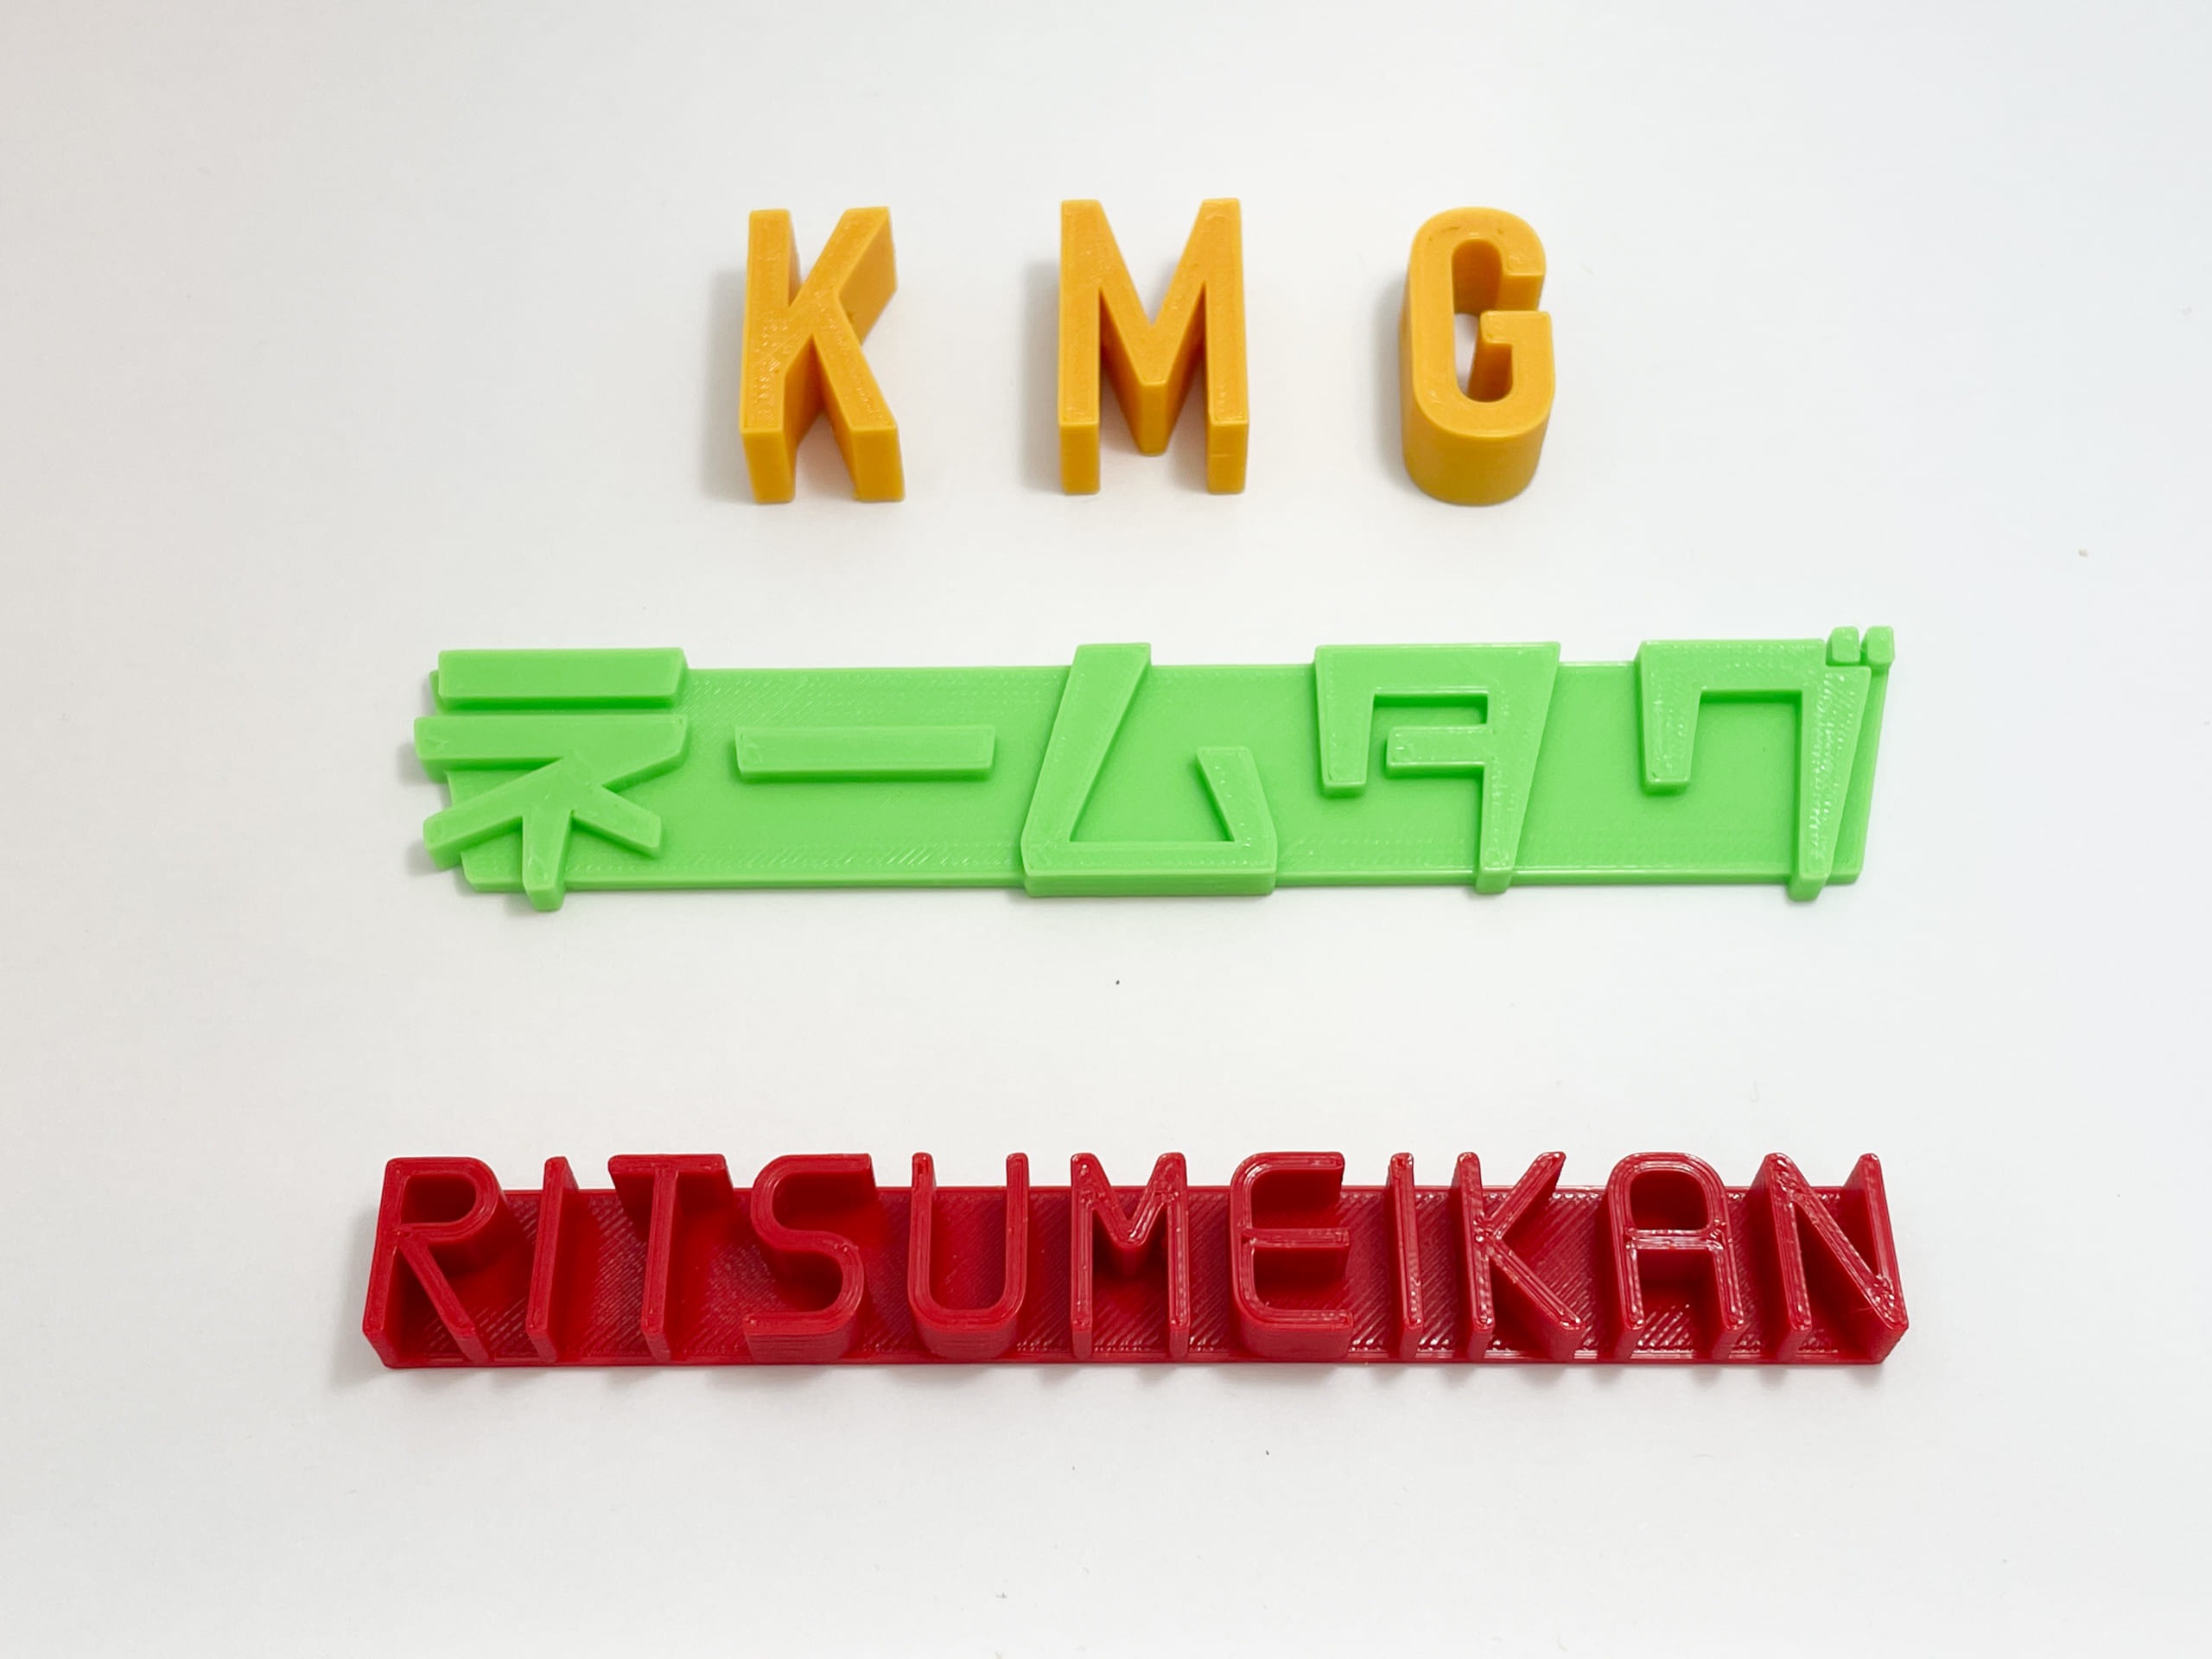 白い背景に3Dプリントされて文字が立体的になったネームタグがある。上は黄色い文字でKMG、真ん中は緑で「ネームタグ」、下は赤でRITSUMEIKAN